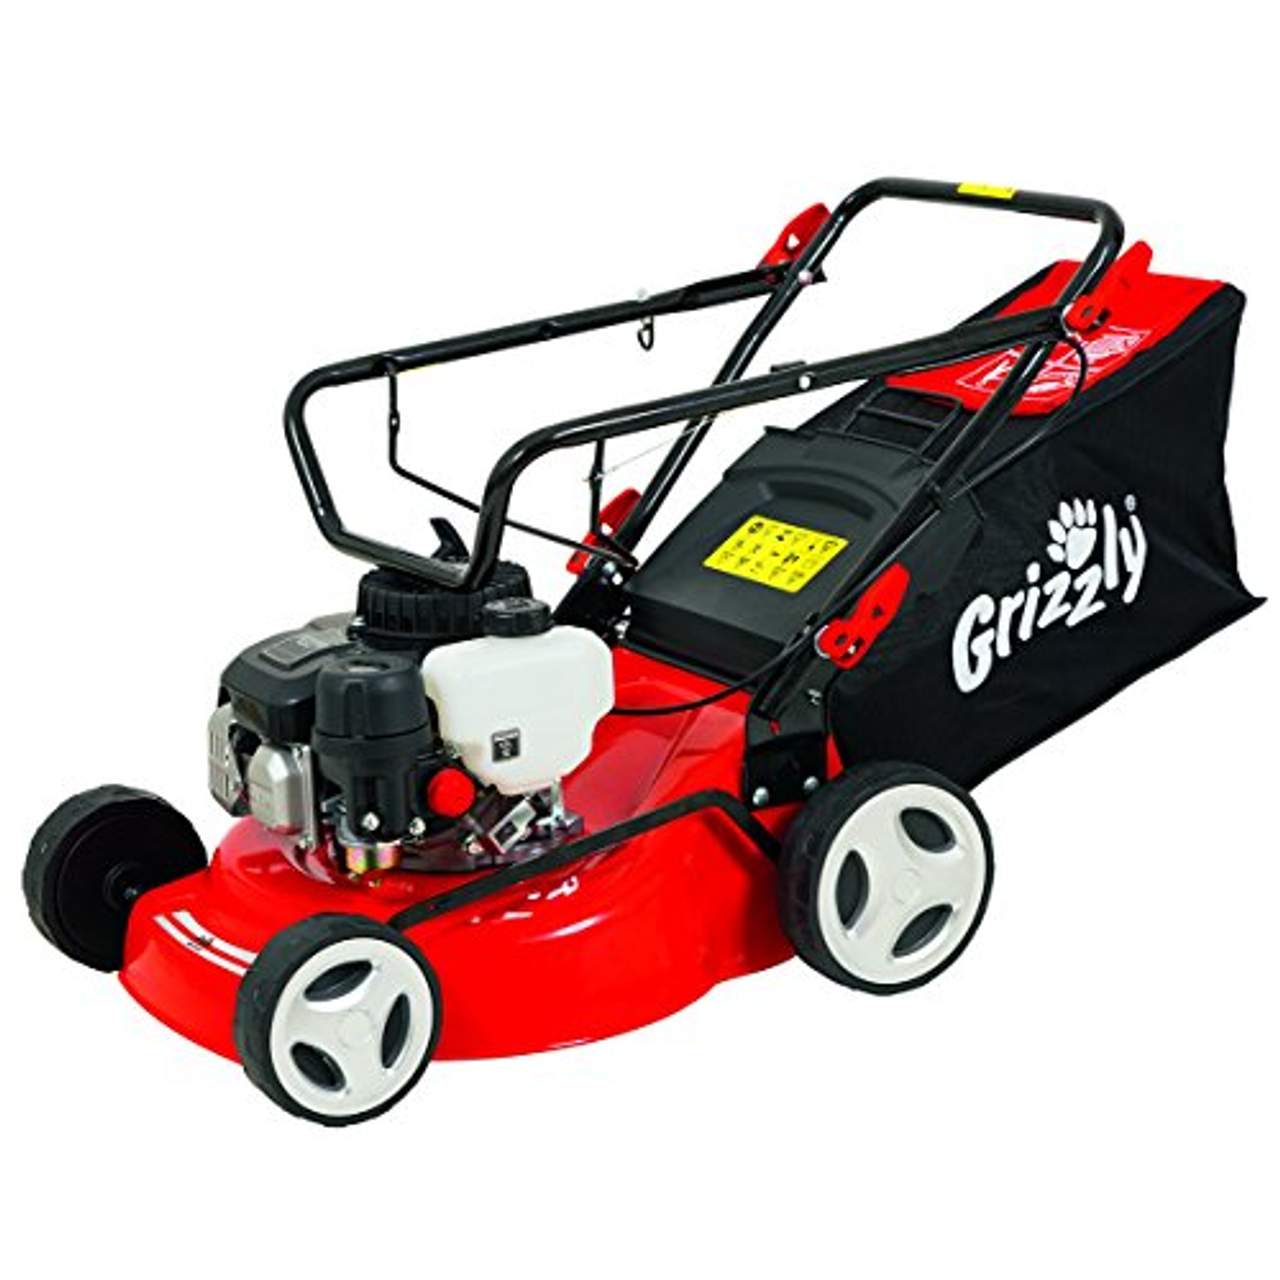 Grizzly Benzin Rasenmäher BRM 4210-20 1,6 kW